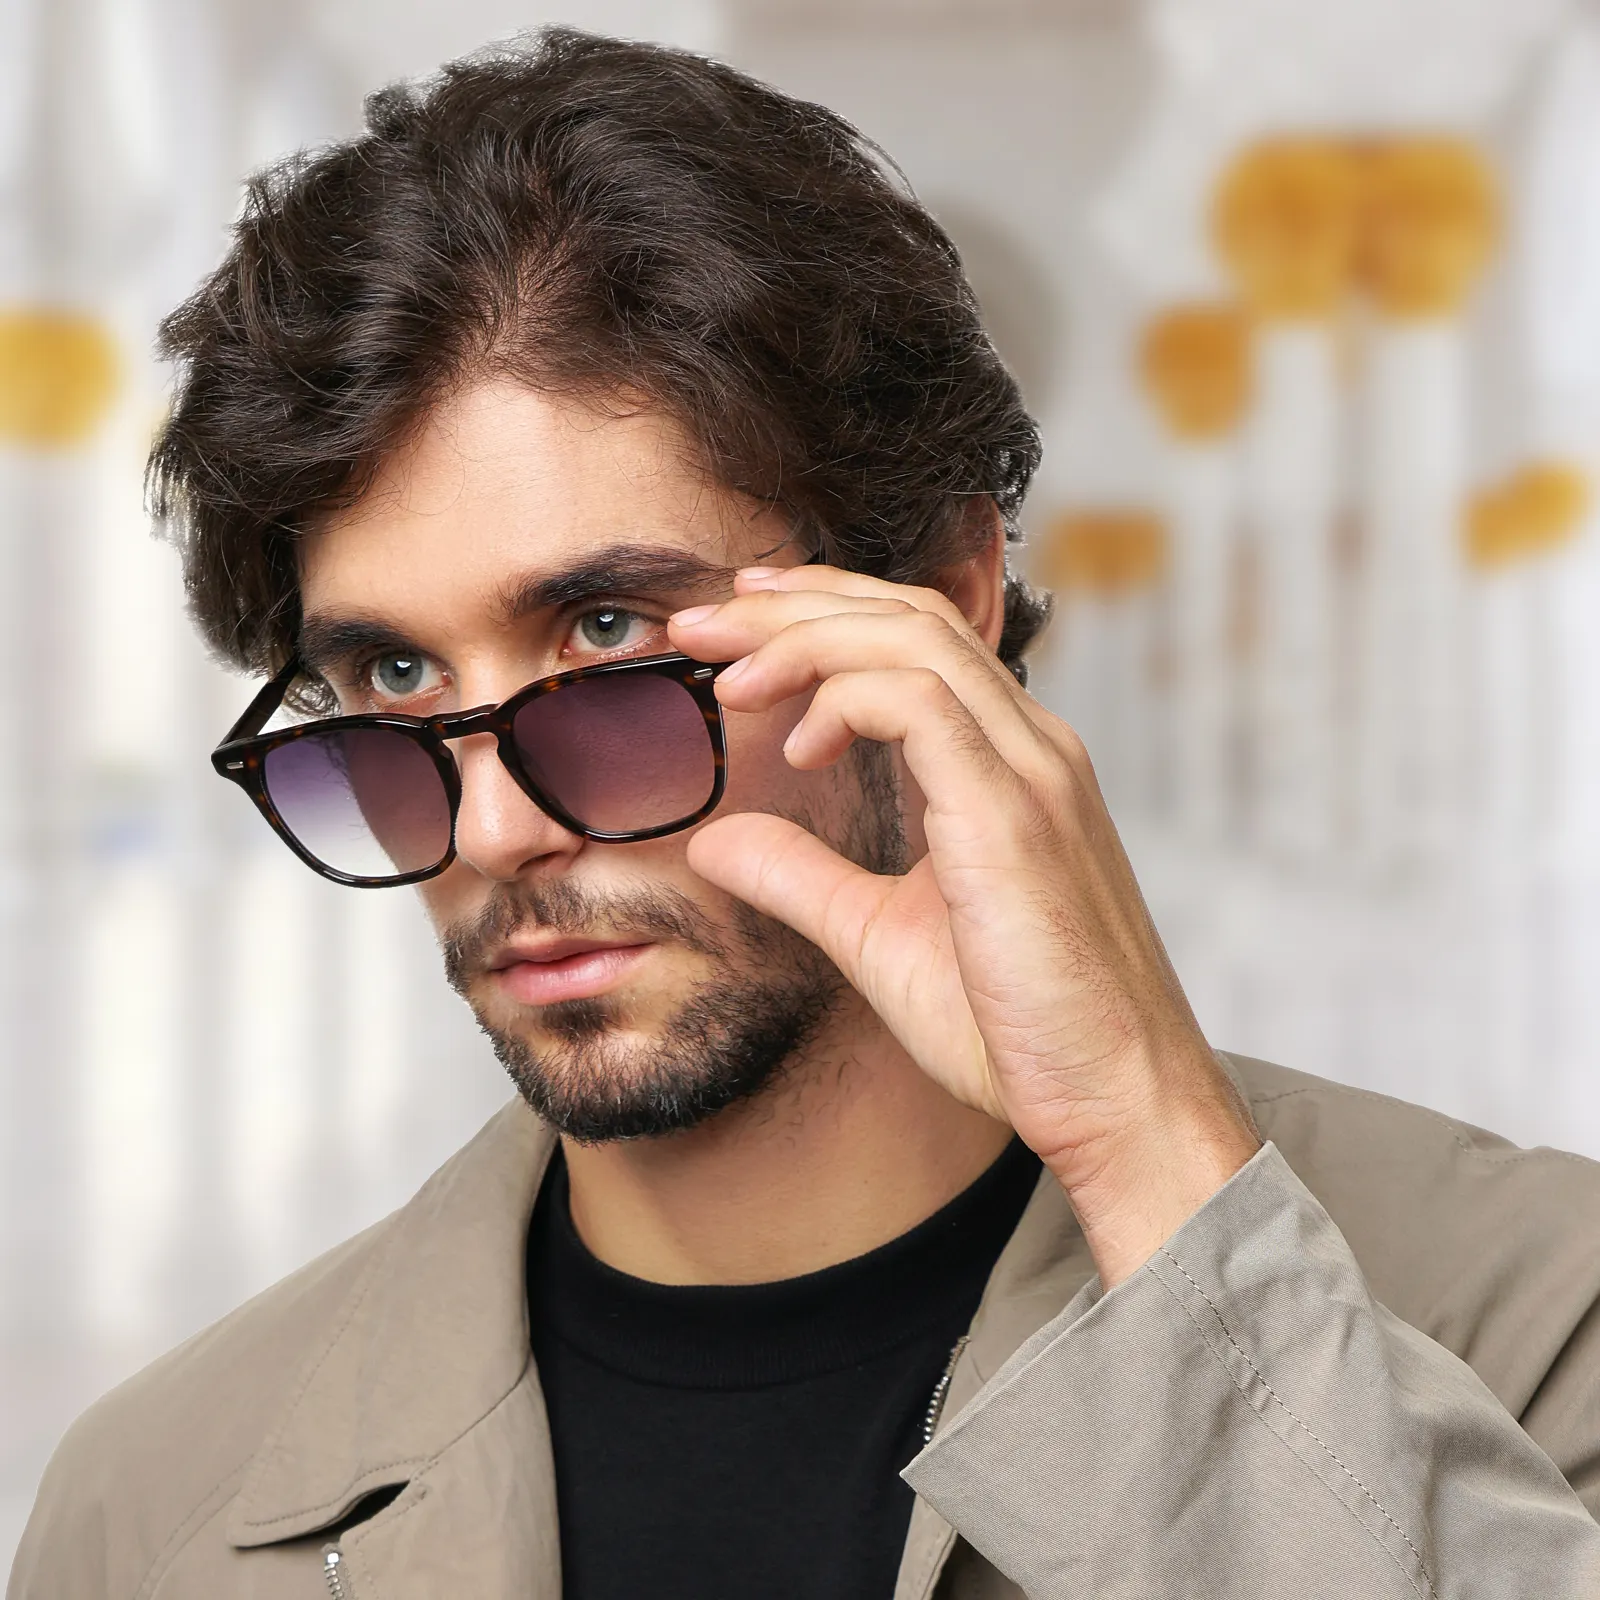 בני אחרונות הנמכרות ביותר משקפי שמש קלאסיים רטרו אצטט פרימיום UV400 משקפי שמש חומים אפורים לגברים